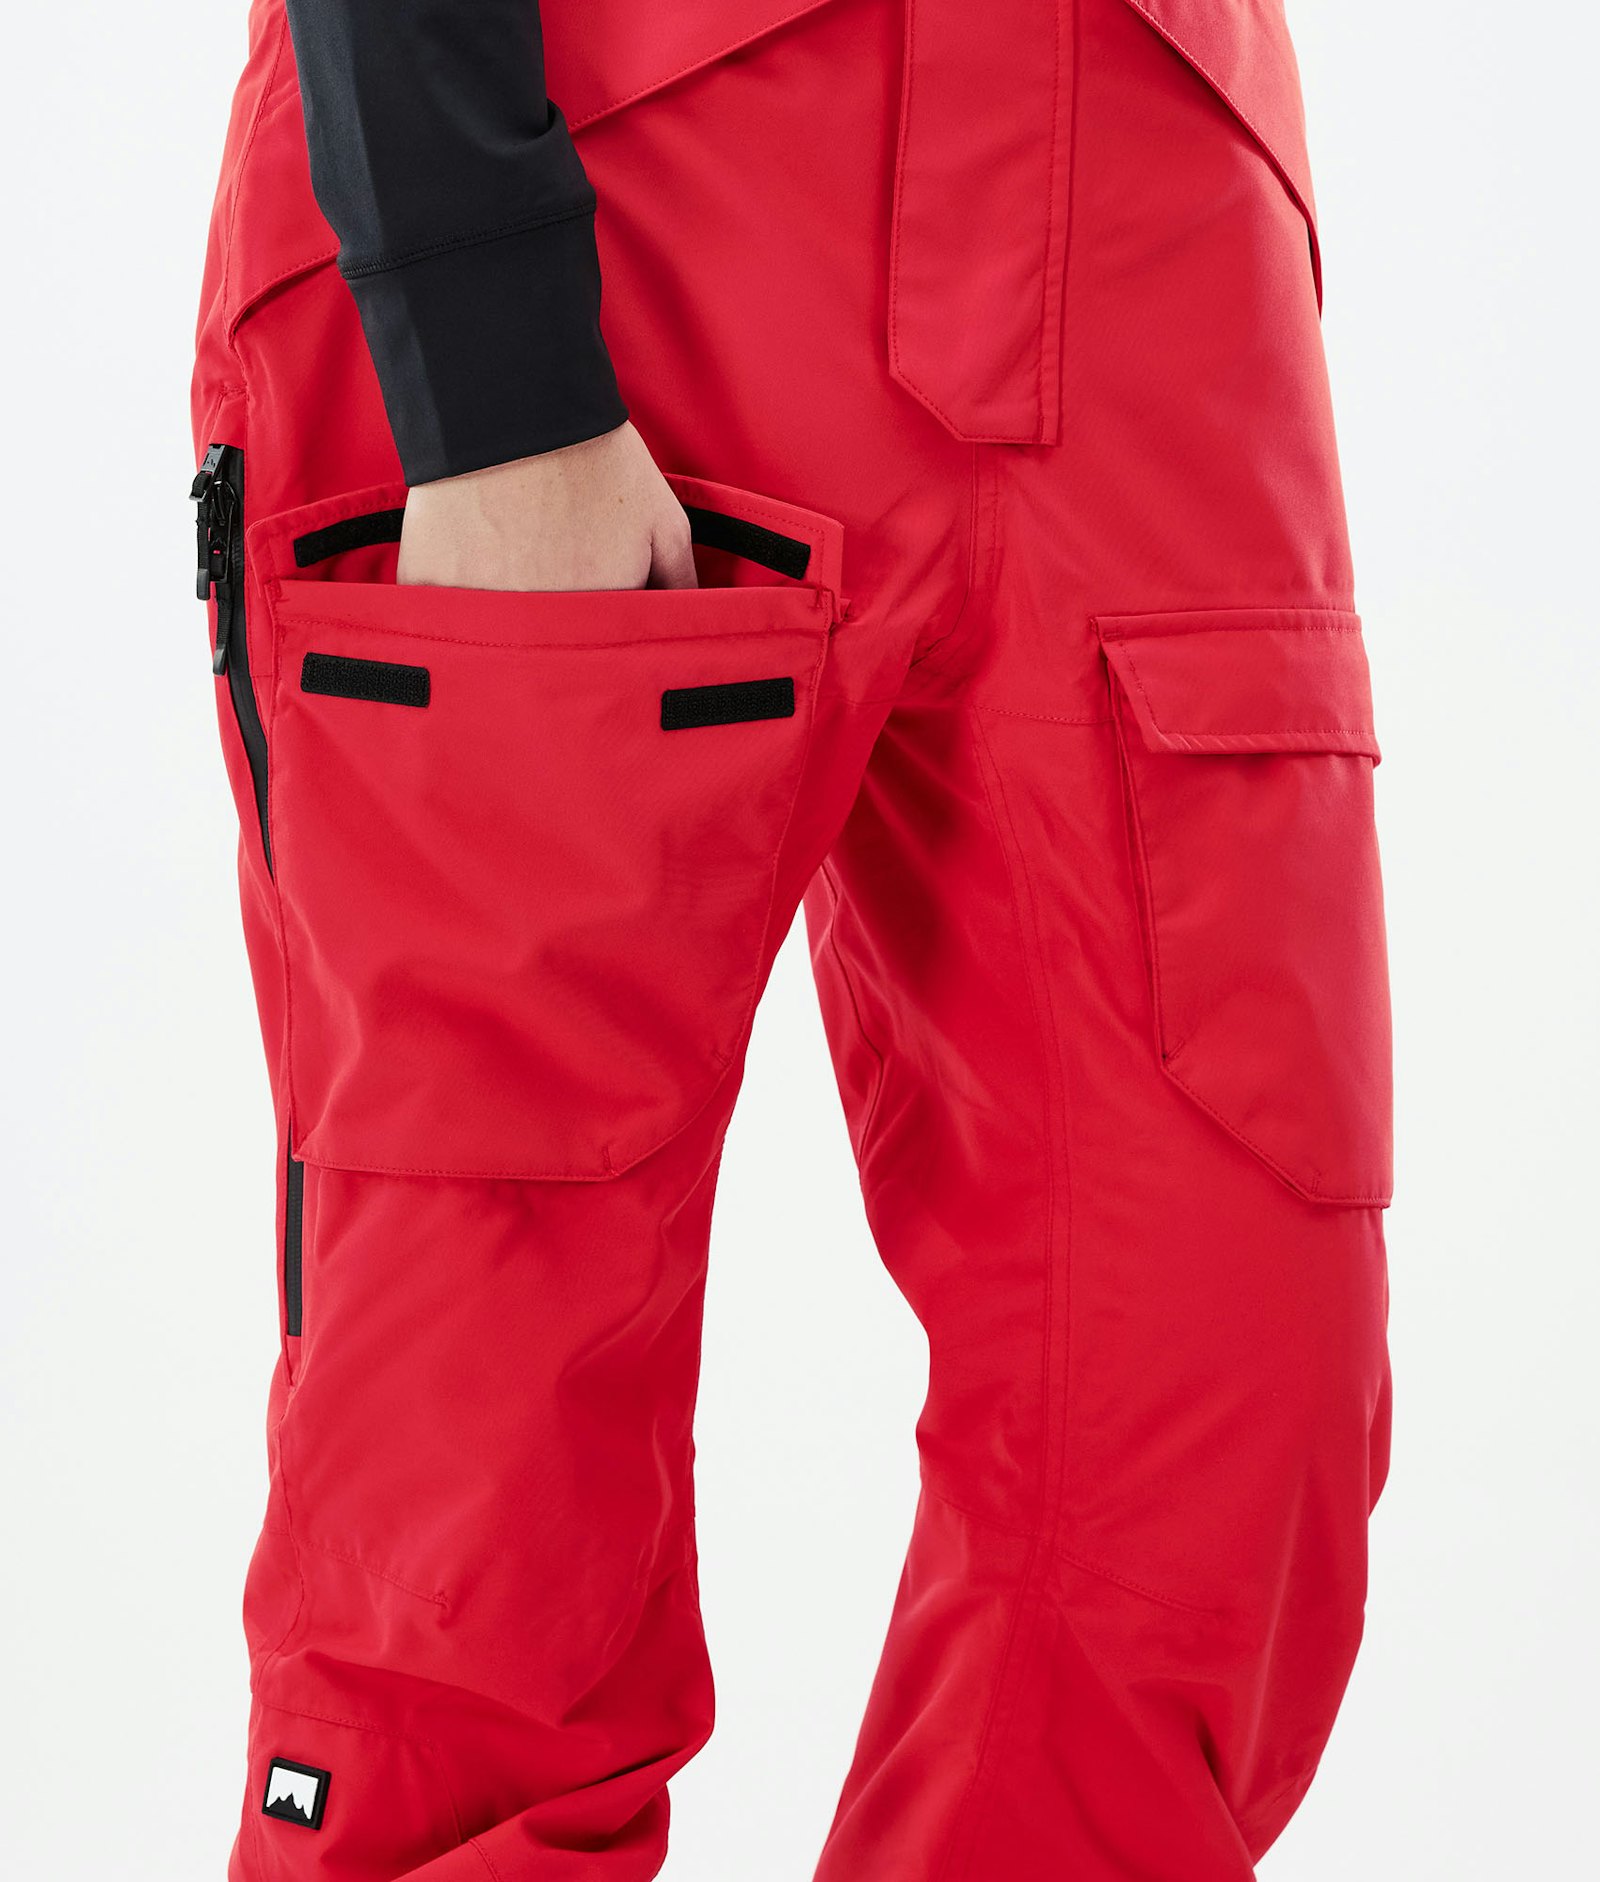 Fawk W 2021 Snowboard Pants Women Red Renewed, Image 6 of 6